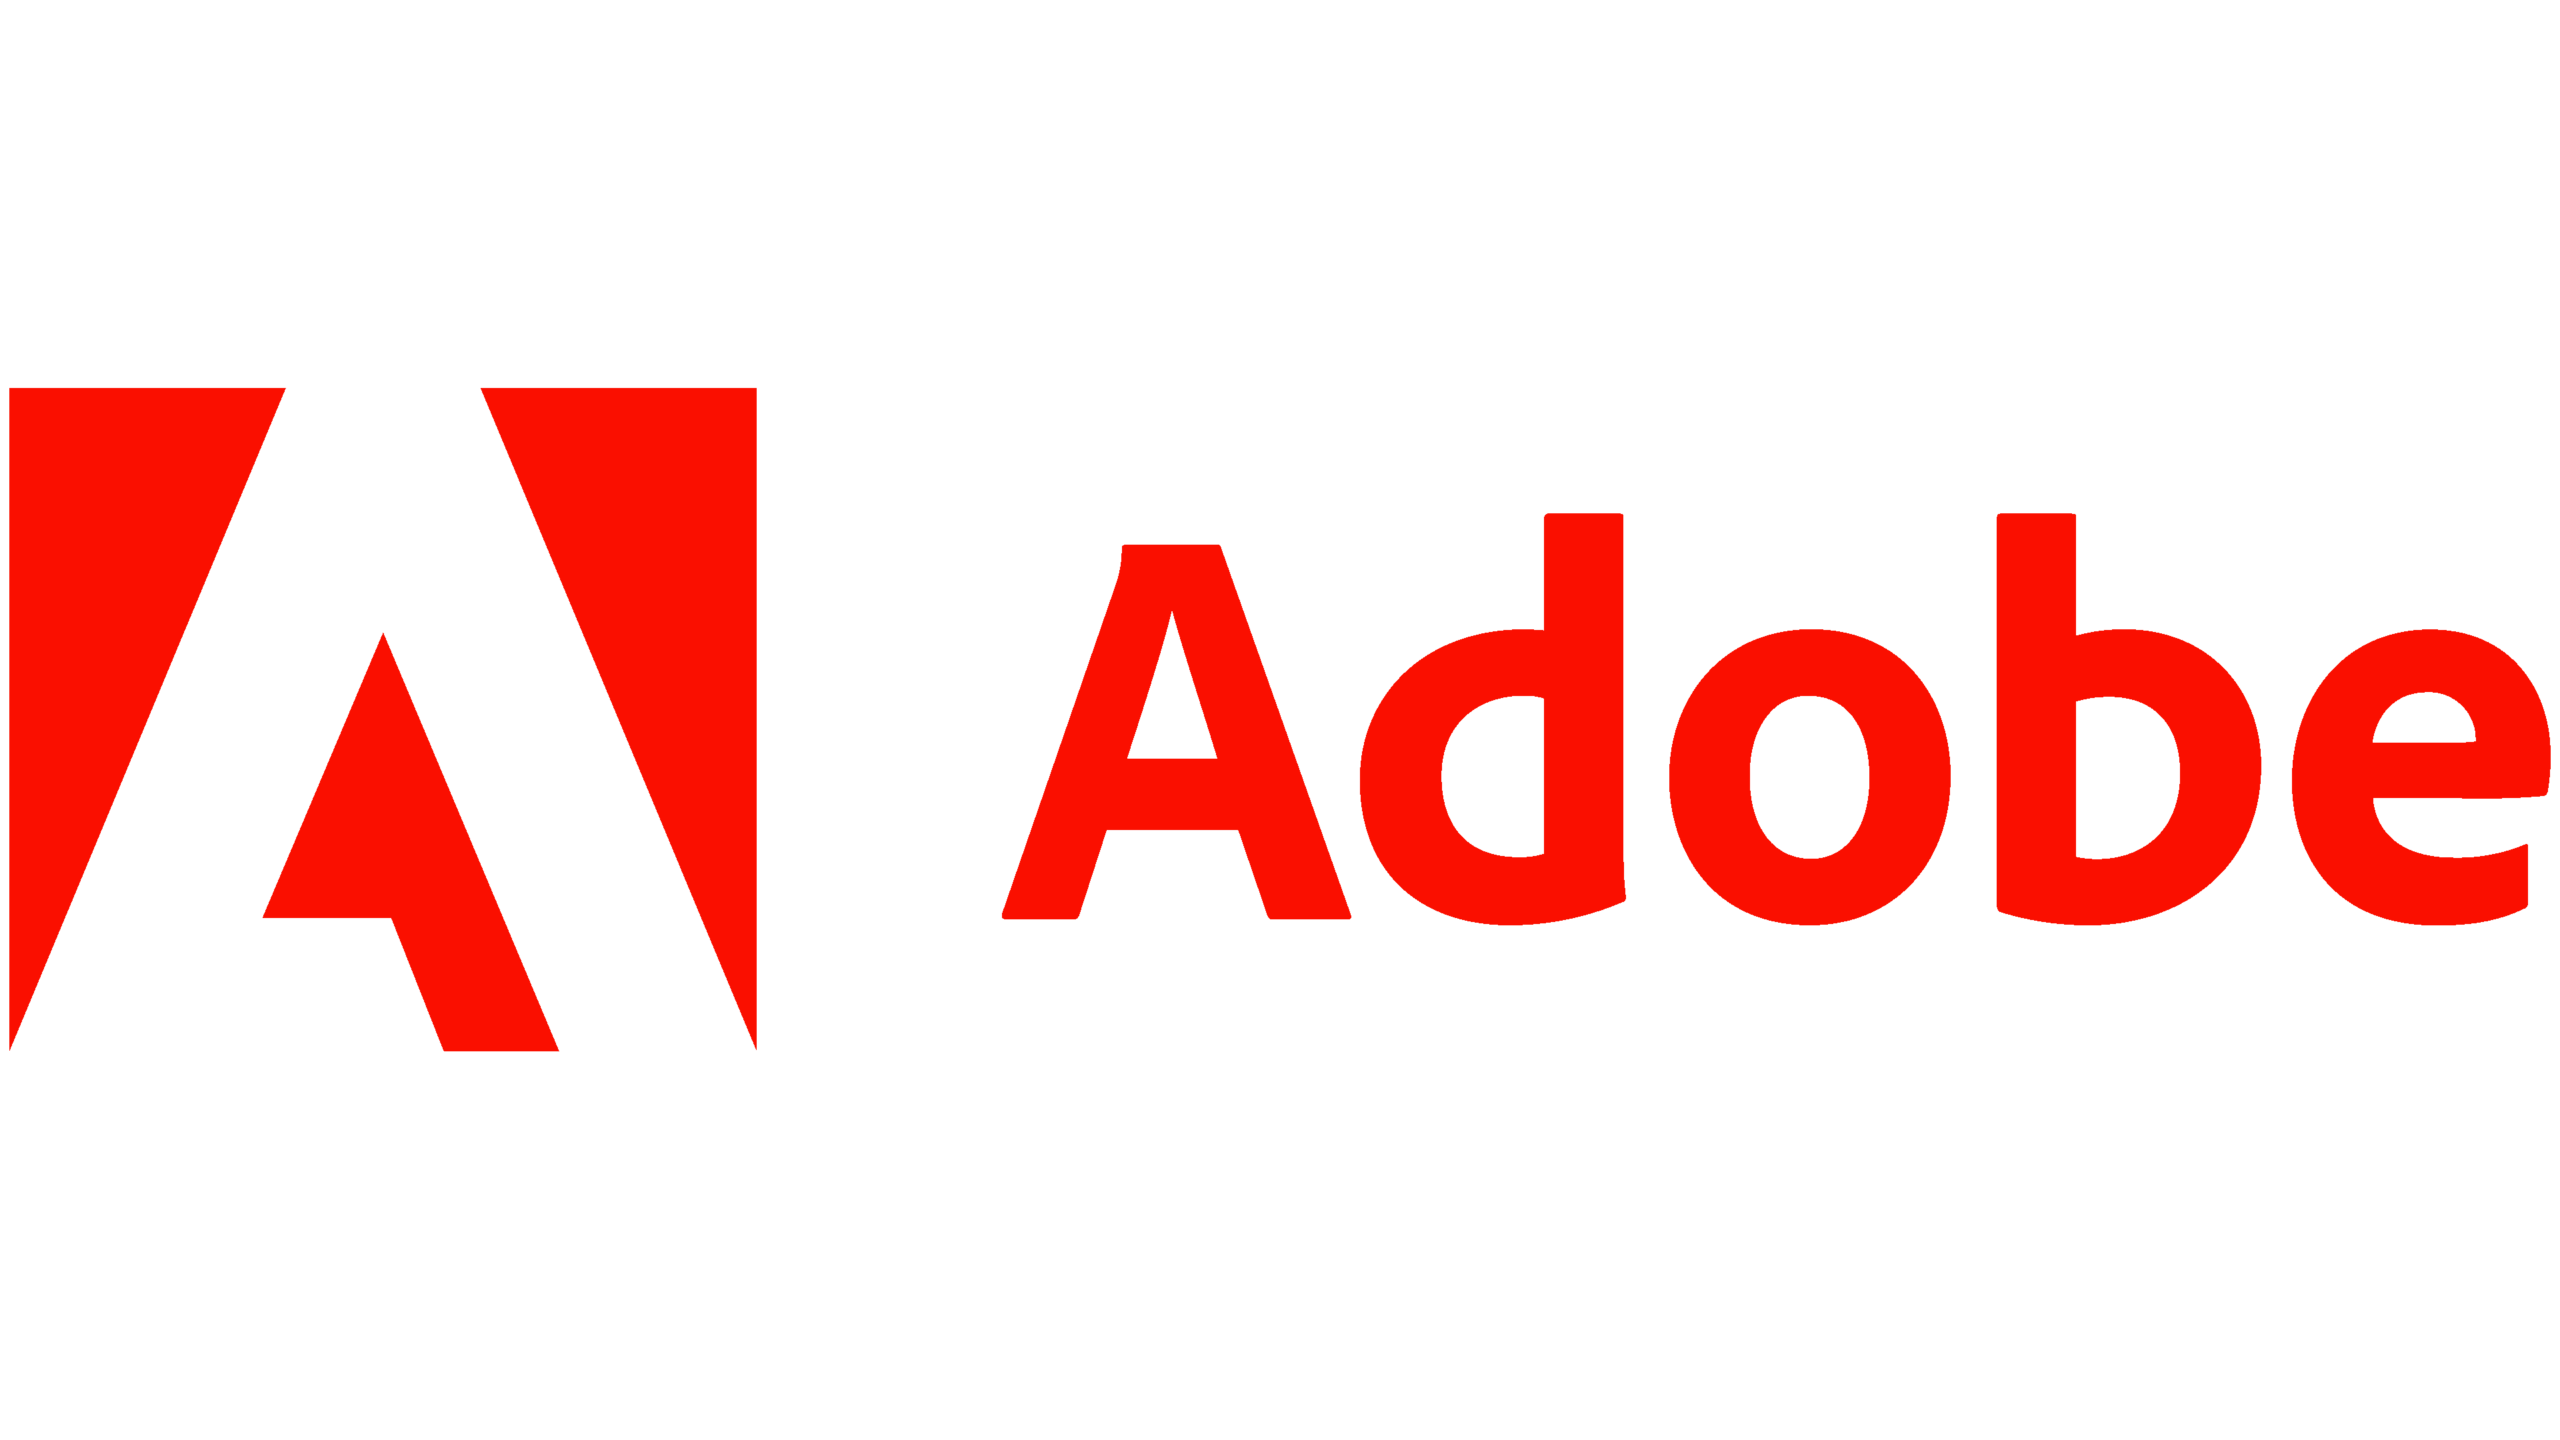 Adobe.com के लिए प्रॉक्सी